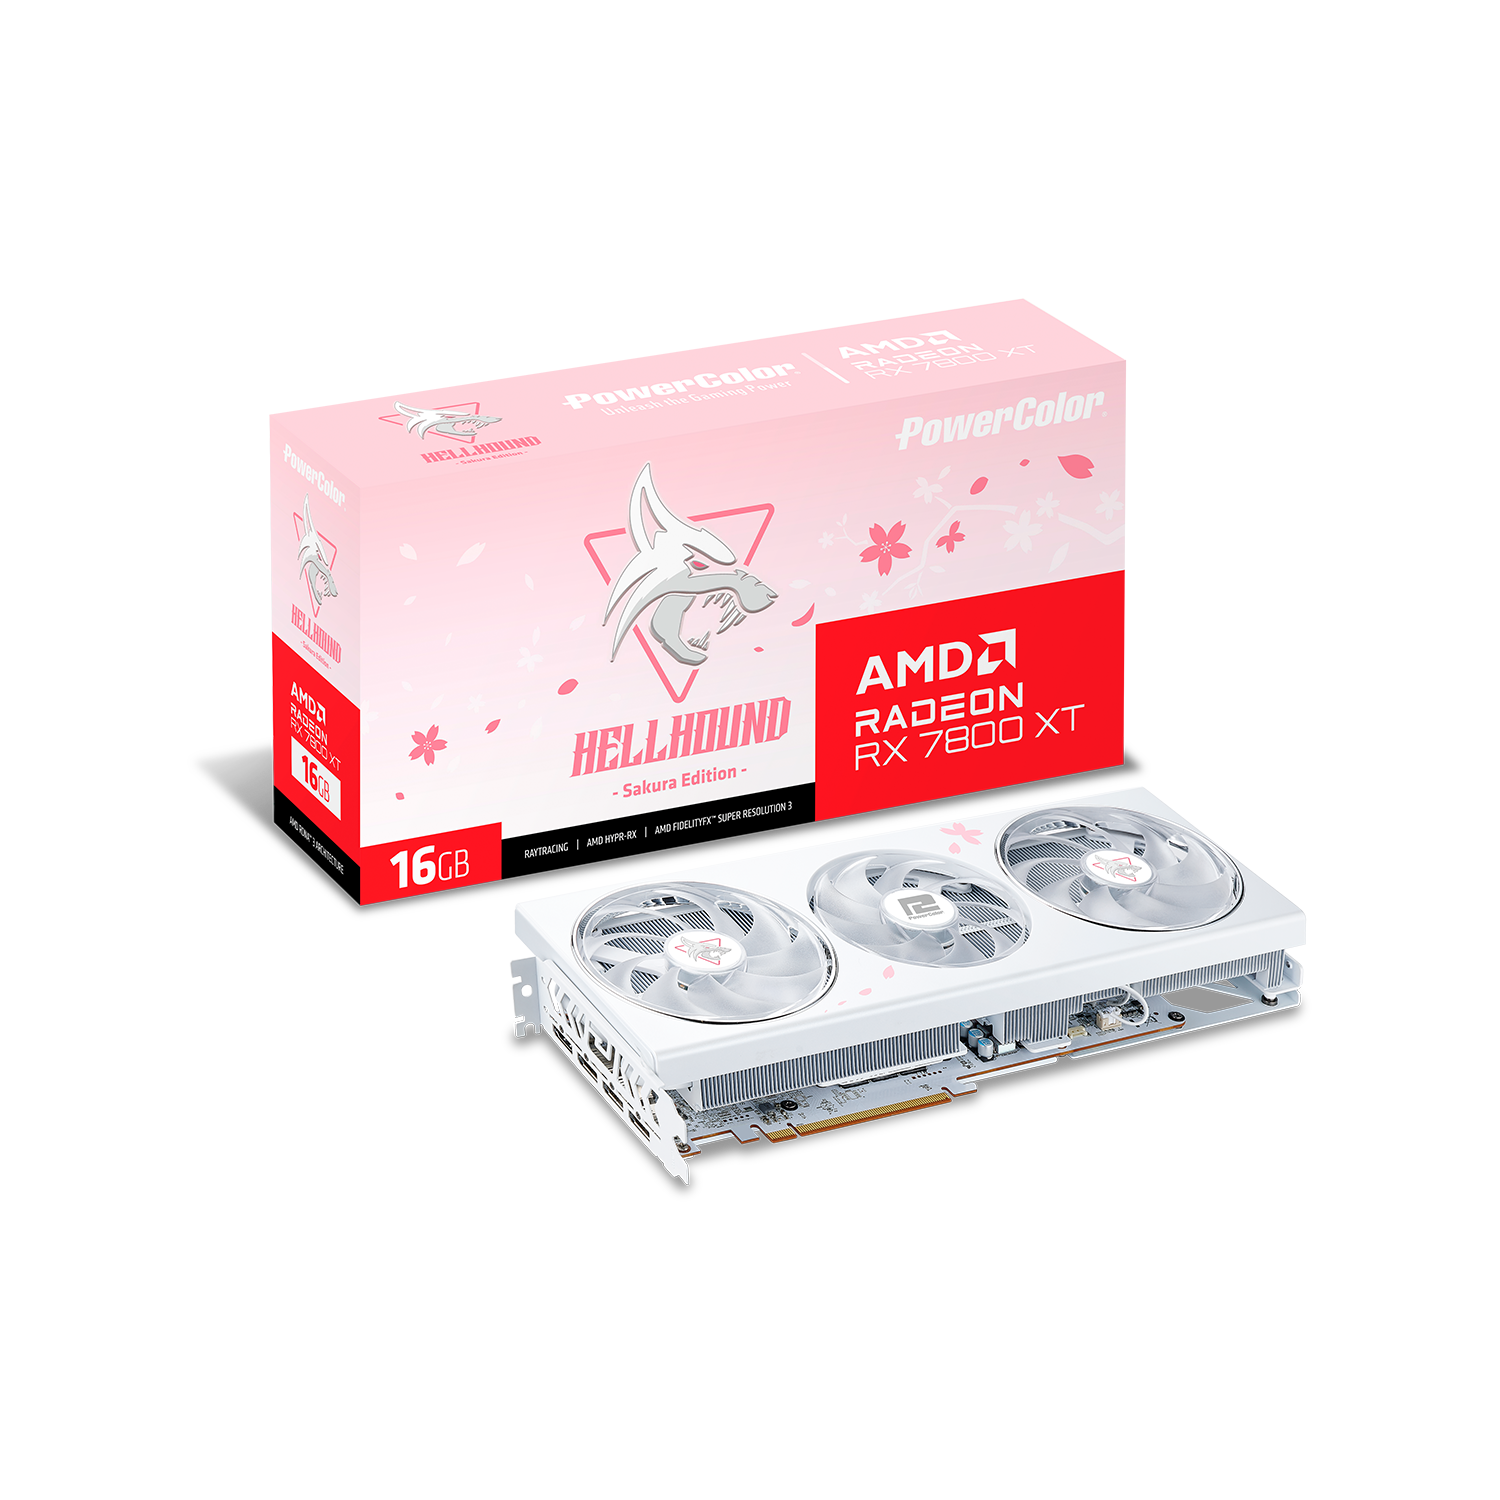 PowerColor(パワーカラー) Radeon RX 7800 XT ピンクカラーLEDトリプルファン搭載 オーバークロックグラフィックボード RX7800XT 16G-L/OC/SAKURA